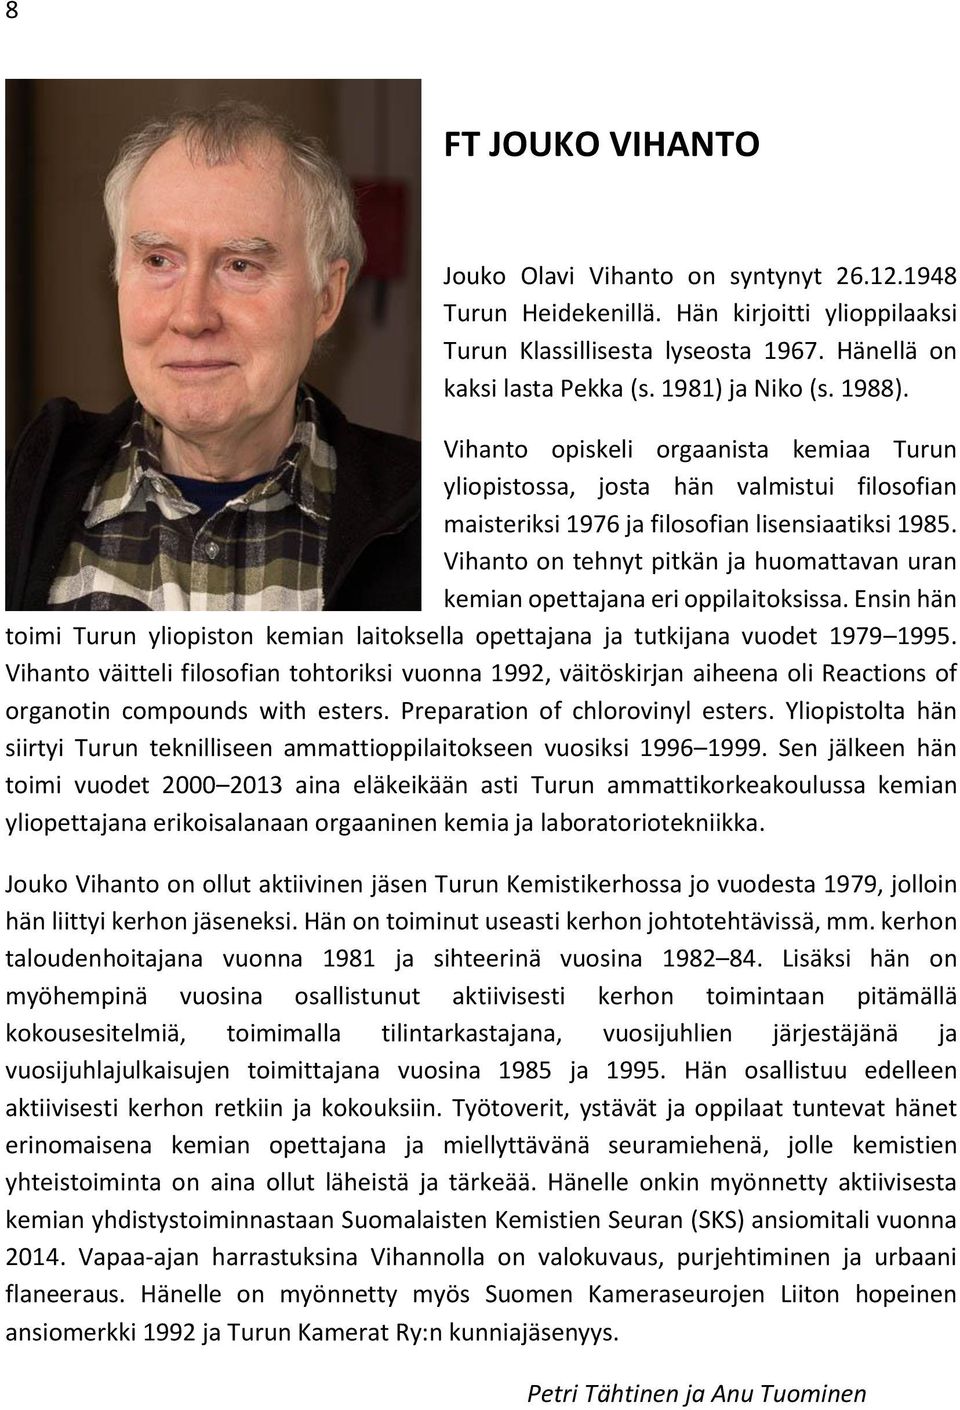 Vihanto on tehnyt pitkän ja huomattavan uran kemian opettajana eri oppilaitoksissa. Ensin hän toimi Turun yliopiston kemian laitoksella opettajana ja tutkijana vuodet 1979 1995.